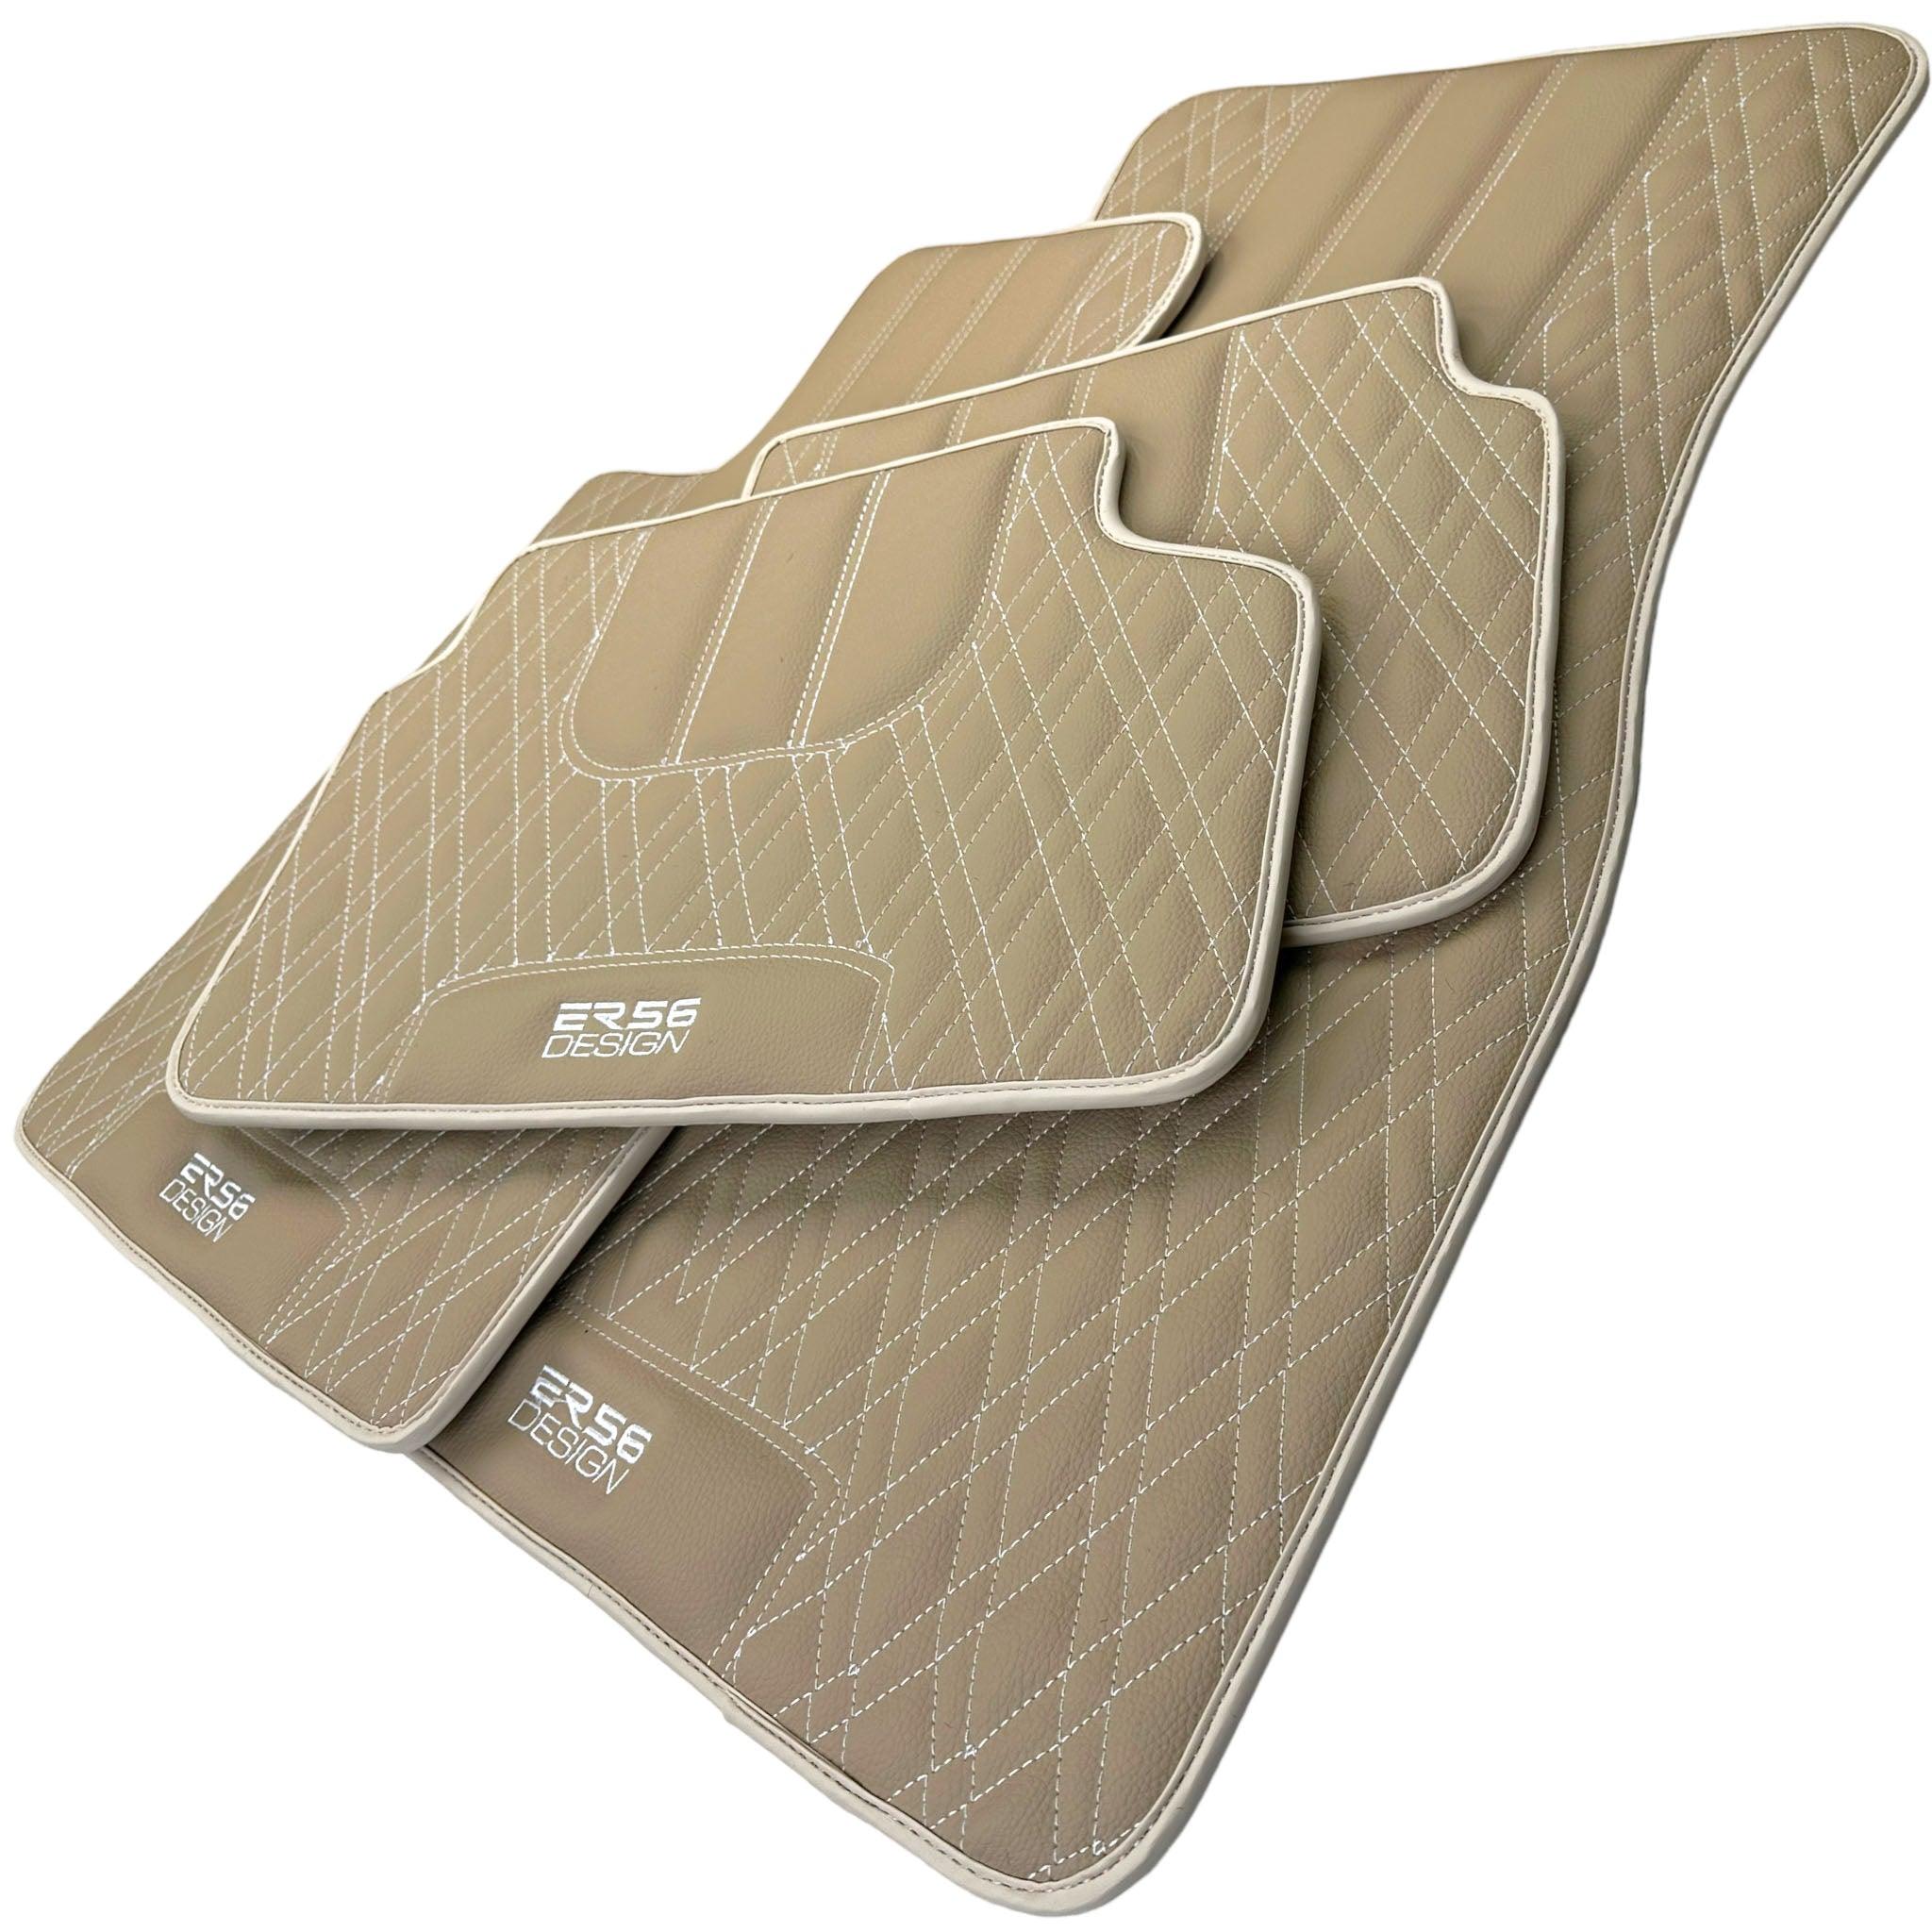 Beige Leather Floor Floor Mats For BMW 5 Series E39